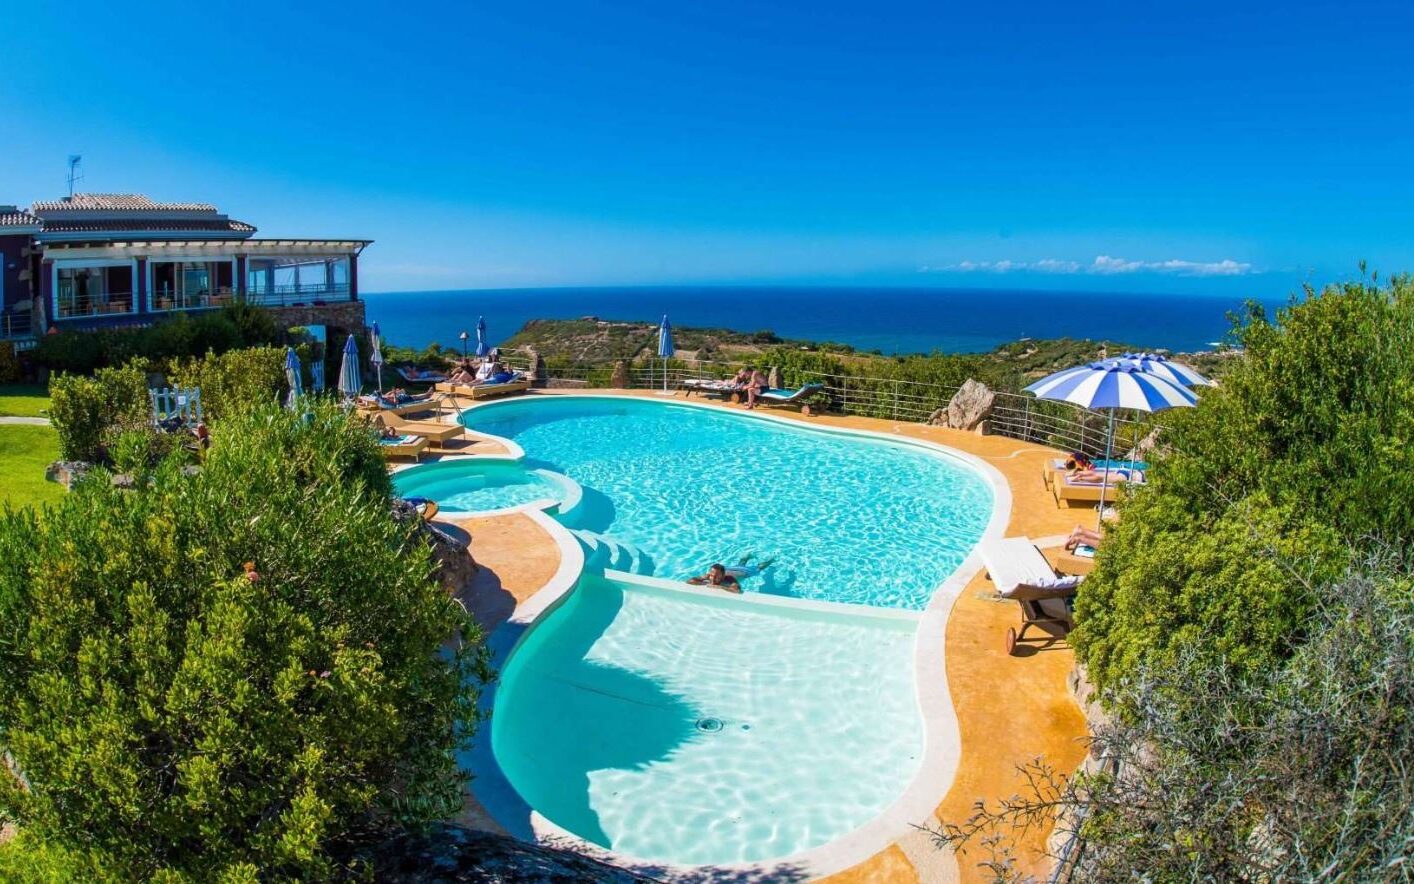 Het mooie uitzicht over zee vanaf het zwembad bij het kleinschalige Bajaloglia Resort op Sardinië